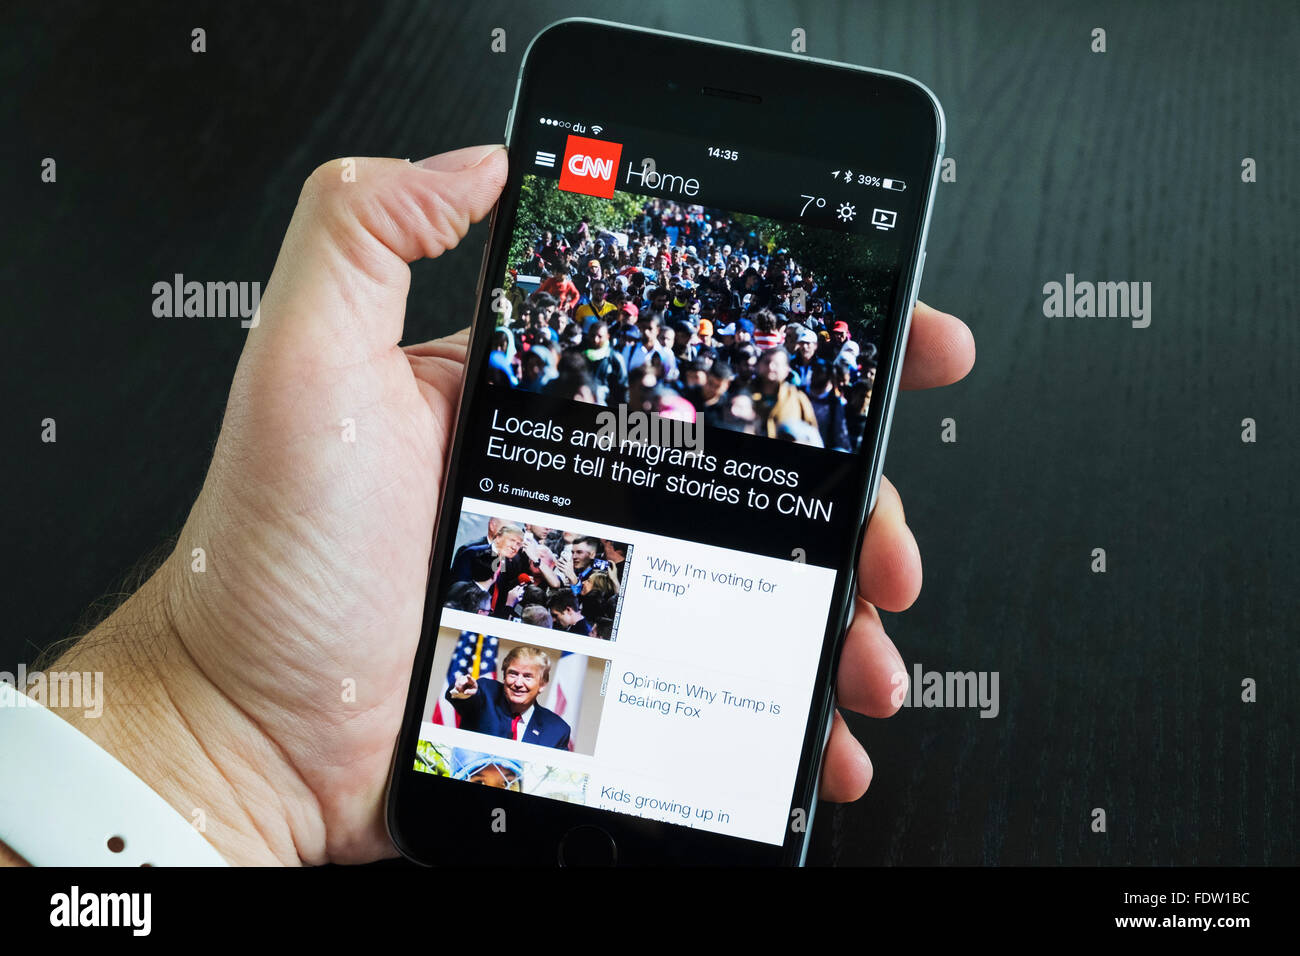 CNN-News-Webseite-app auf einem iPhone 6 Plus Smartphone Stockfoto